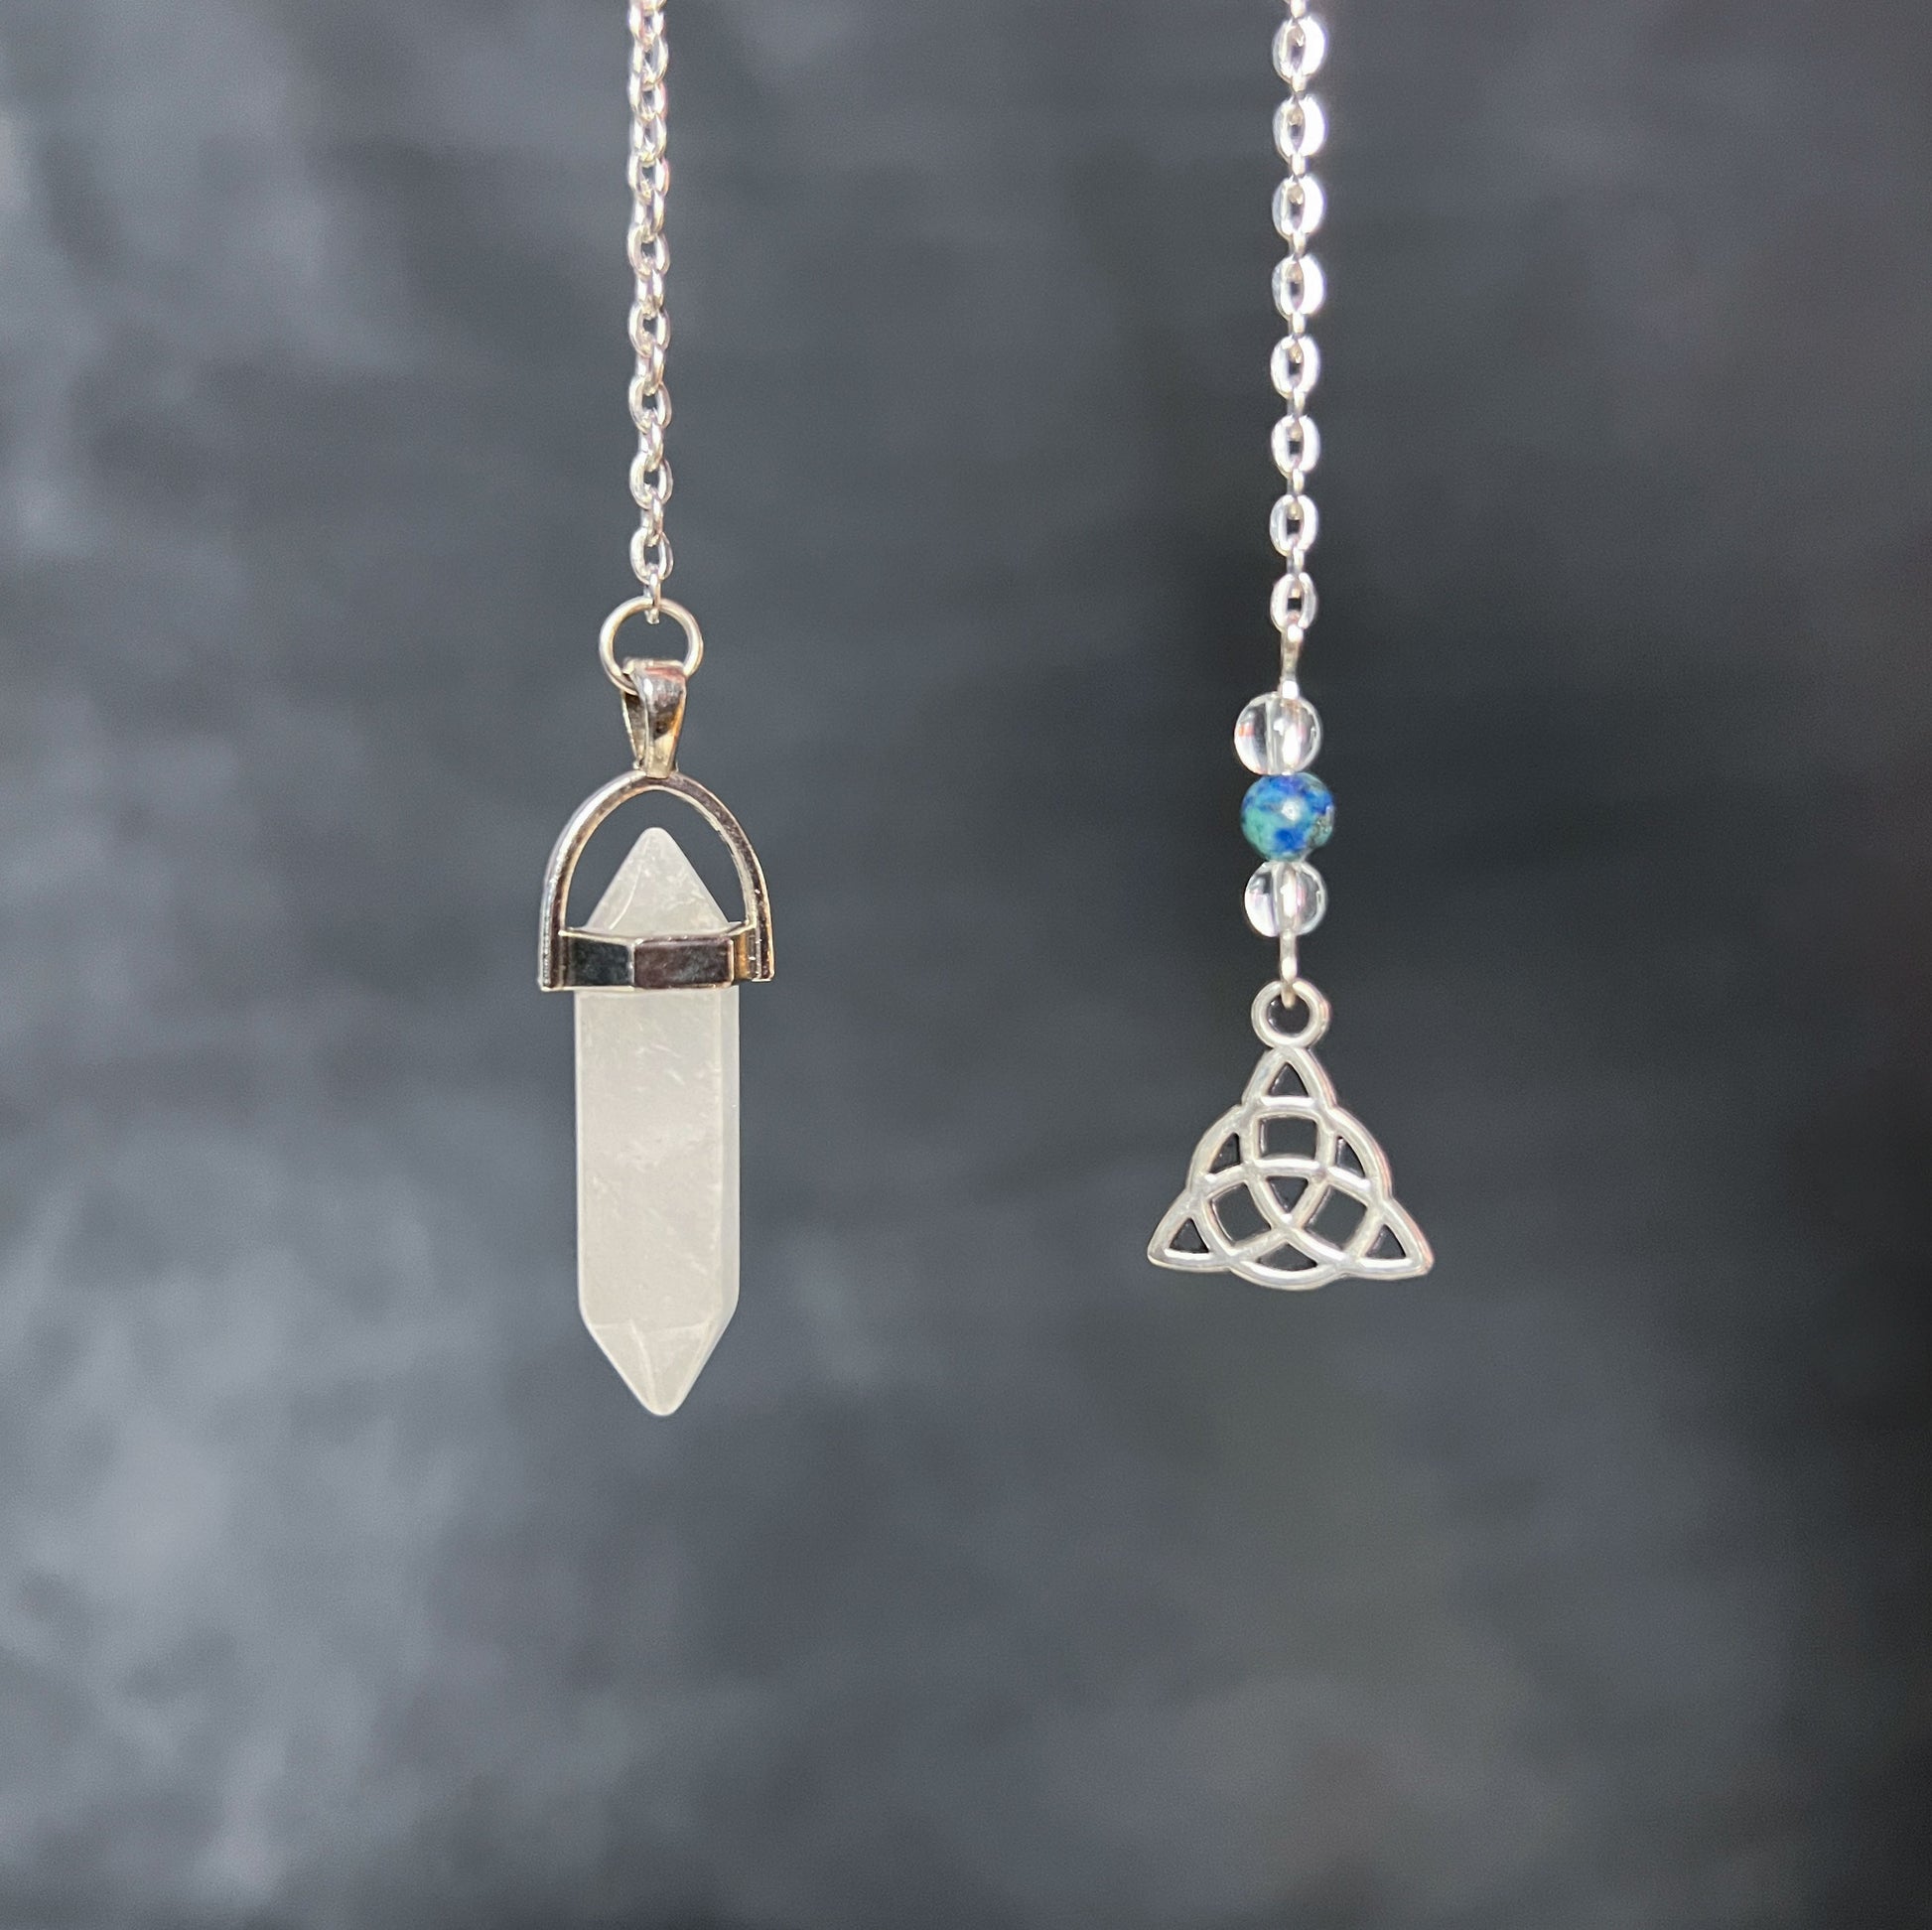 Gemstone pendulum clear quartz crystal azurite in malachite pendulum triquetra celtic knot charm divination tool dowsing pendulum